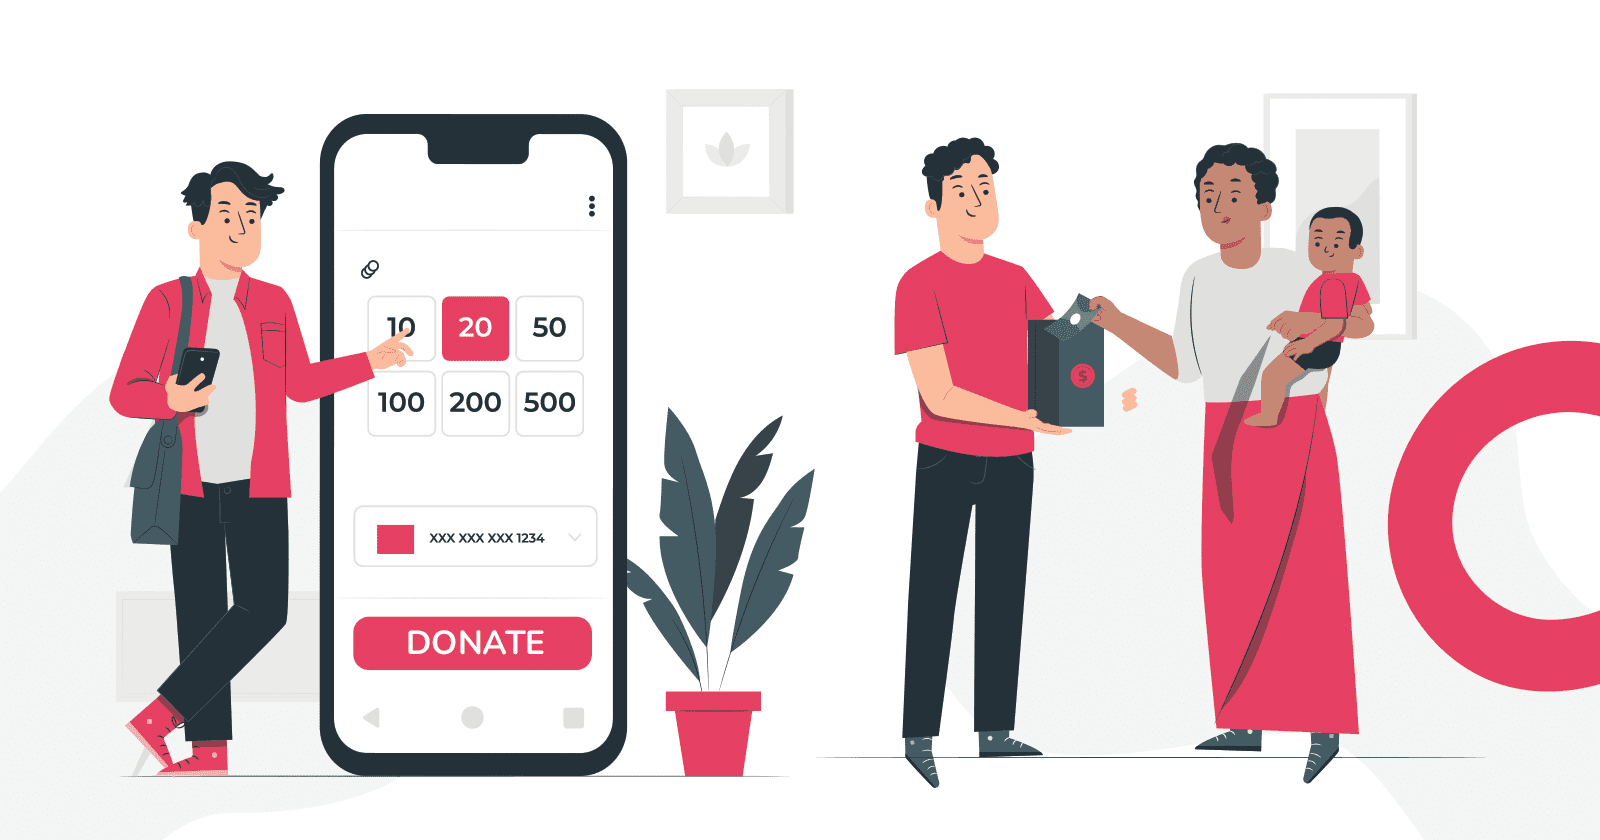 Hoe kan ik doneren? Doneren is eenvoudig op 4fund.com!